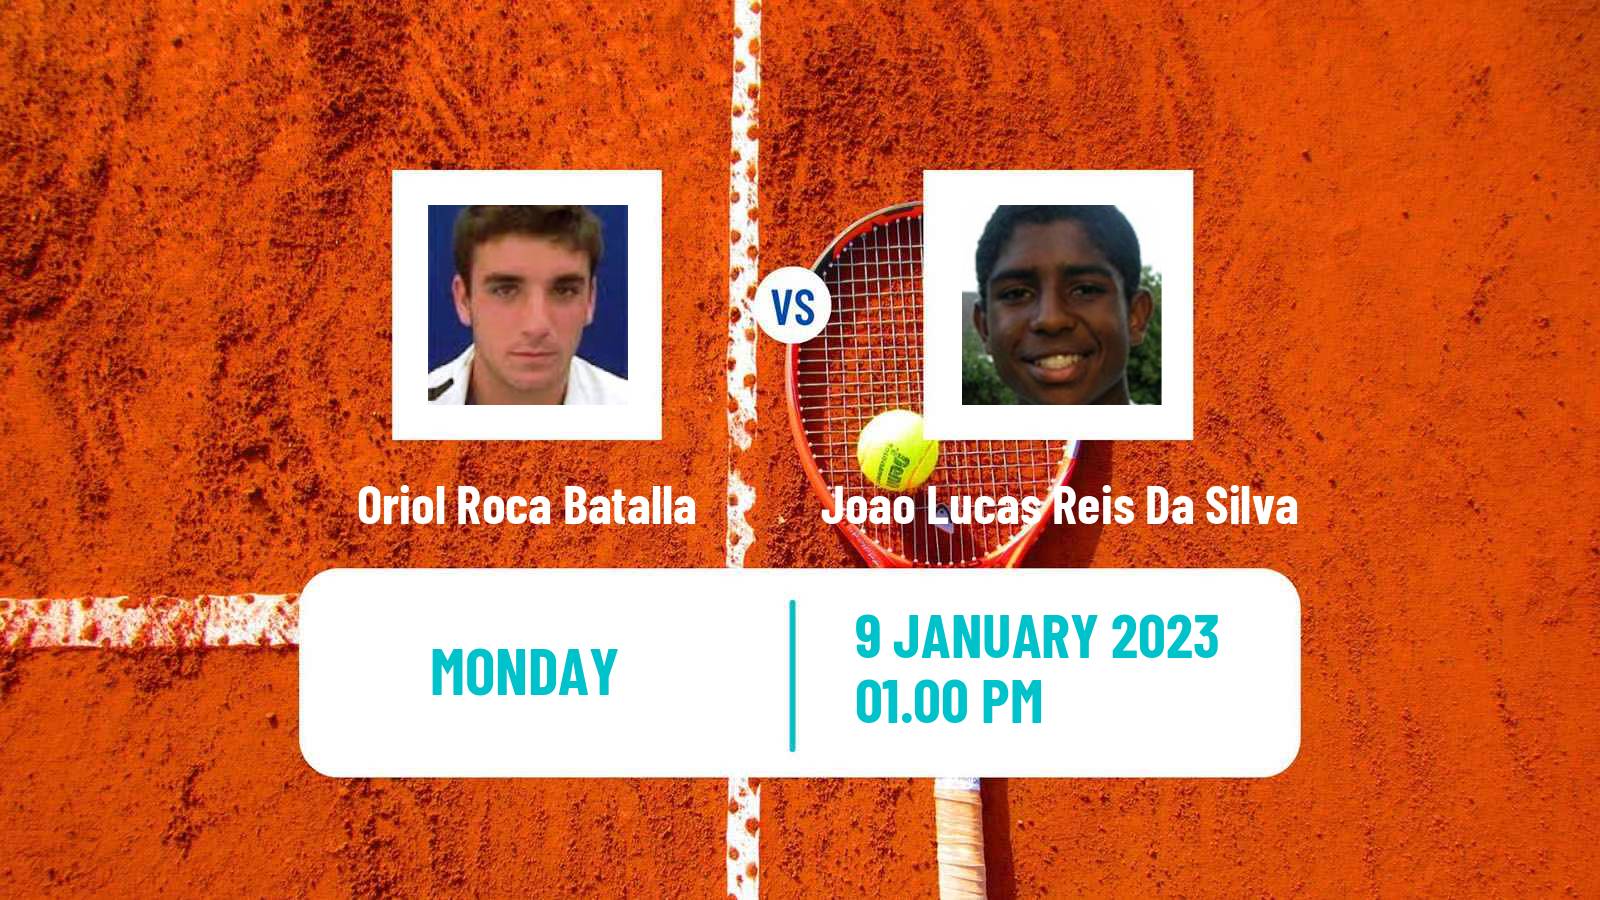 Tennis ATP Challenger Oriol Roca Batalla - Joao Lucas Reis Da Silva